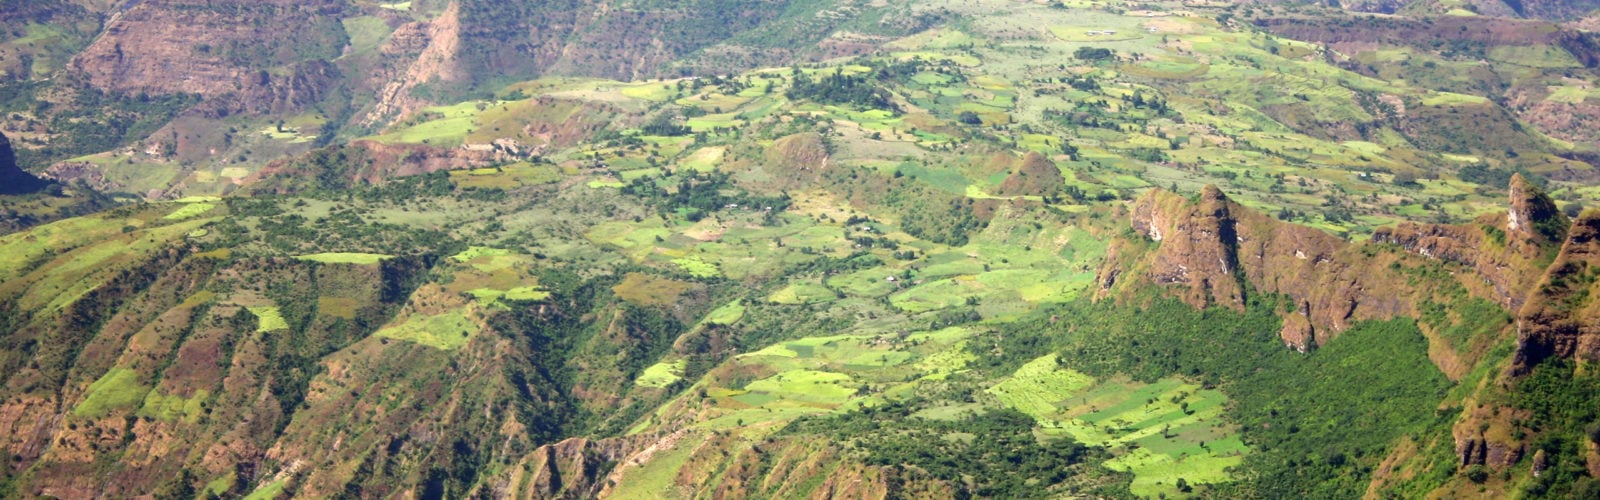 simien-mountains-ethiopia